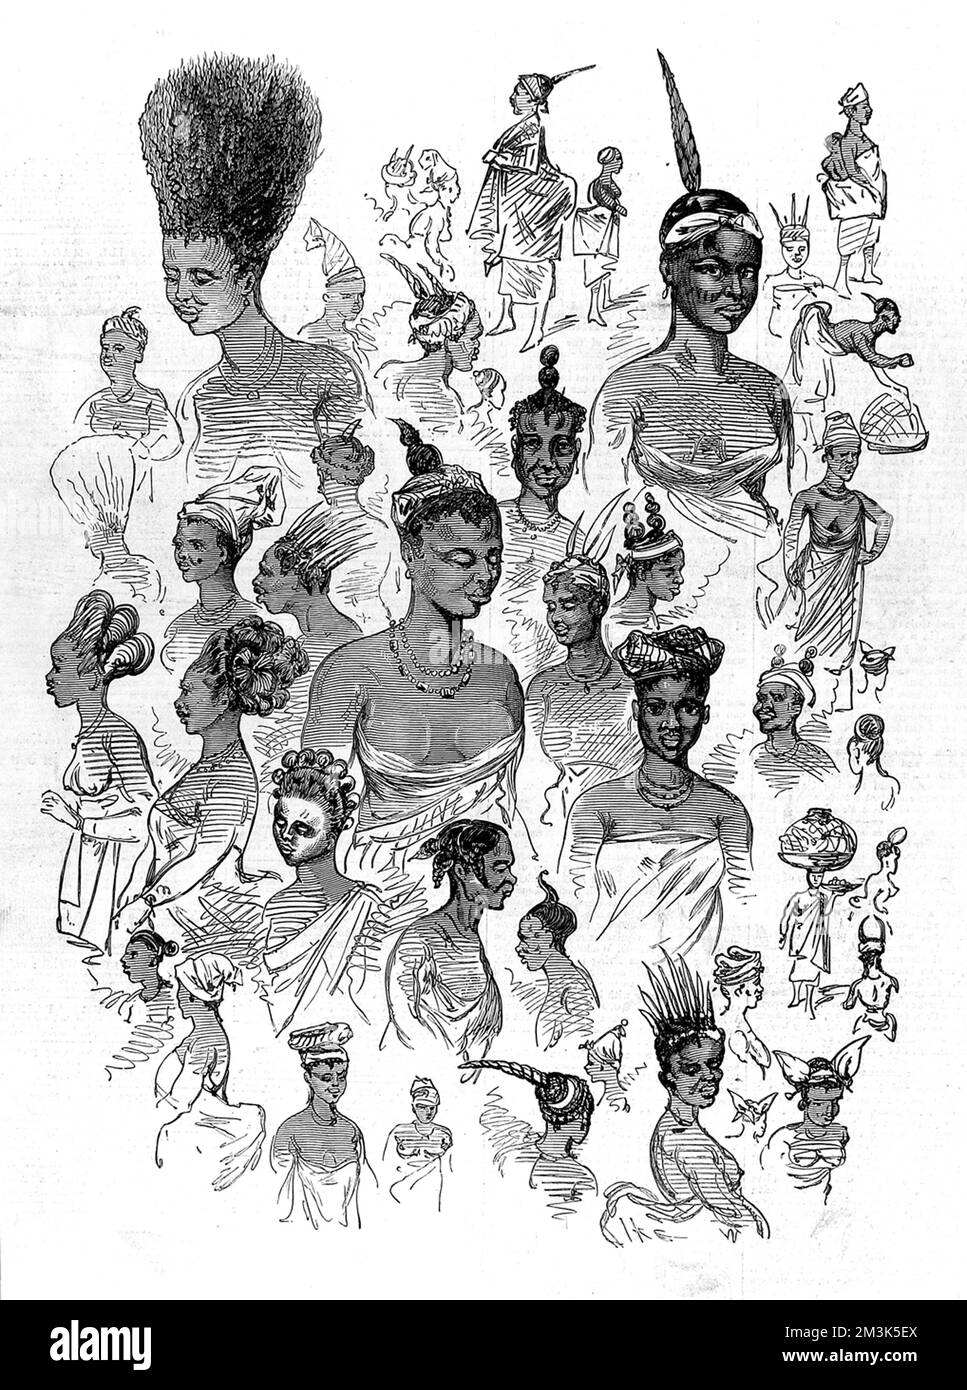 Mode féminin indigène au château de Cape Coast, garnison et siège des colonialistes britanniques jusqu'en 1877. Cette esquisse a été faite pendant la deuxième guerre d'Ashanti. La deuxième guerre d'Ashanti entre,1873-74, fut entre le roi Kofi Karikari, dirigeant des Ashanti (ou Asantehene), et les Britanniques. Tous deux tentaient de sécuriser la ville côtière d'Elmina sur la côte ouest de l'Afrique, également connue sous le nom de Gold Coast. Date: 1874 Banque D'Images